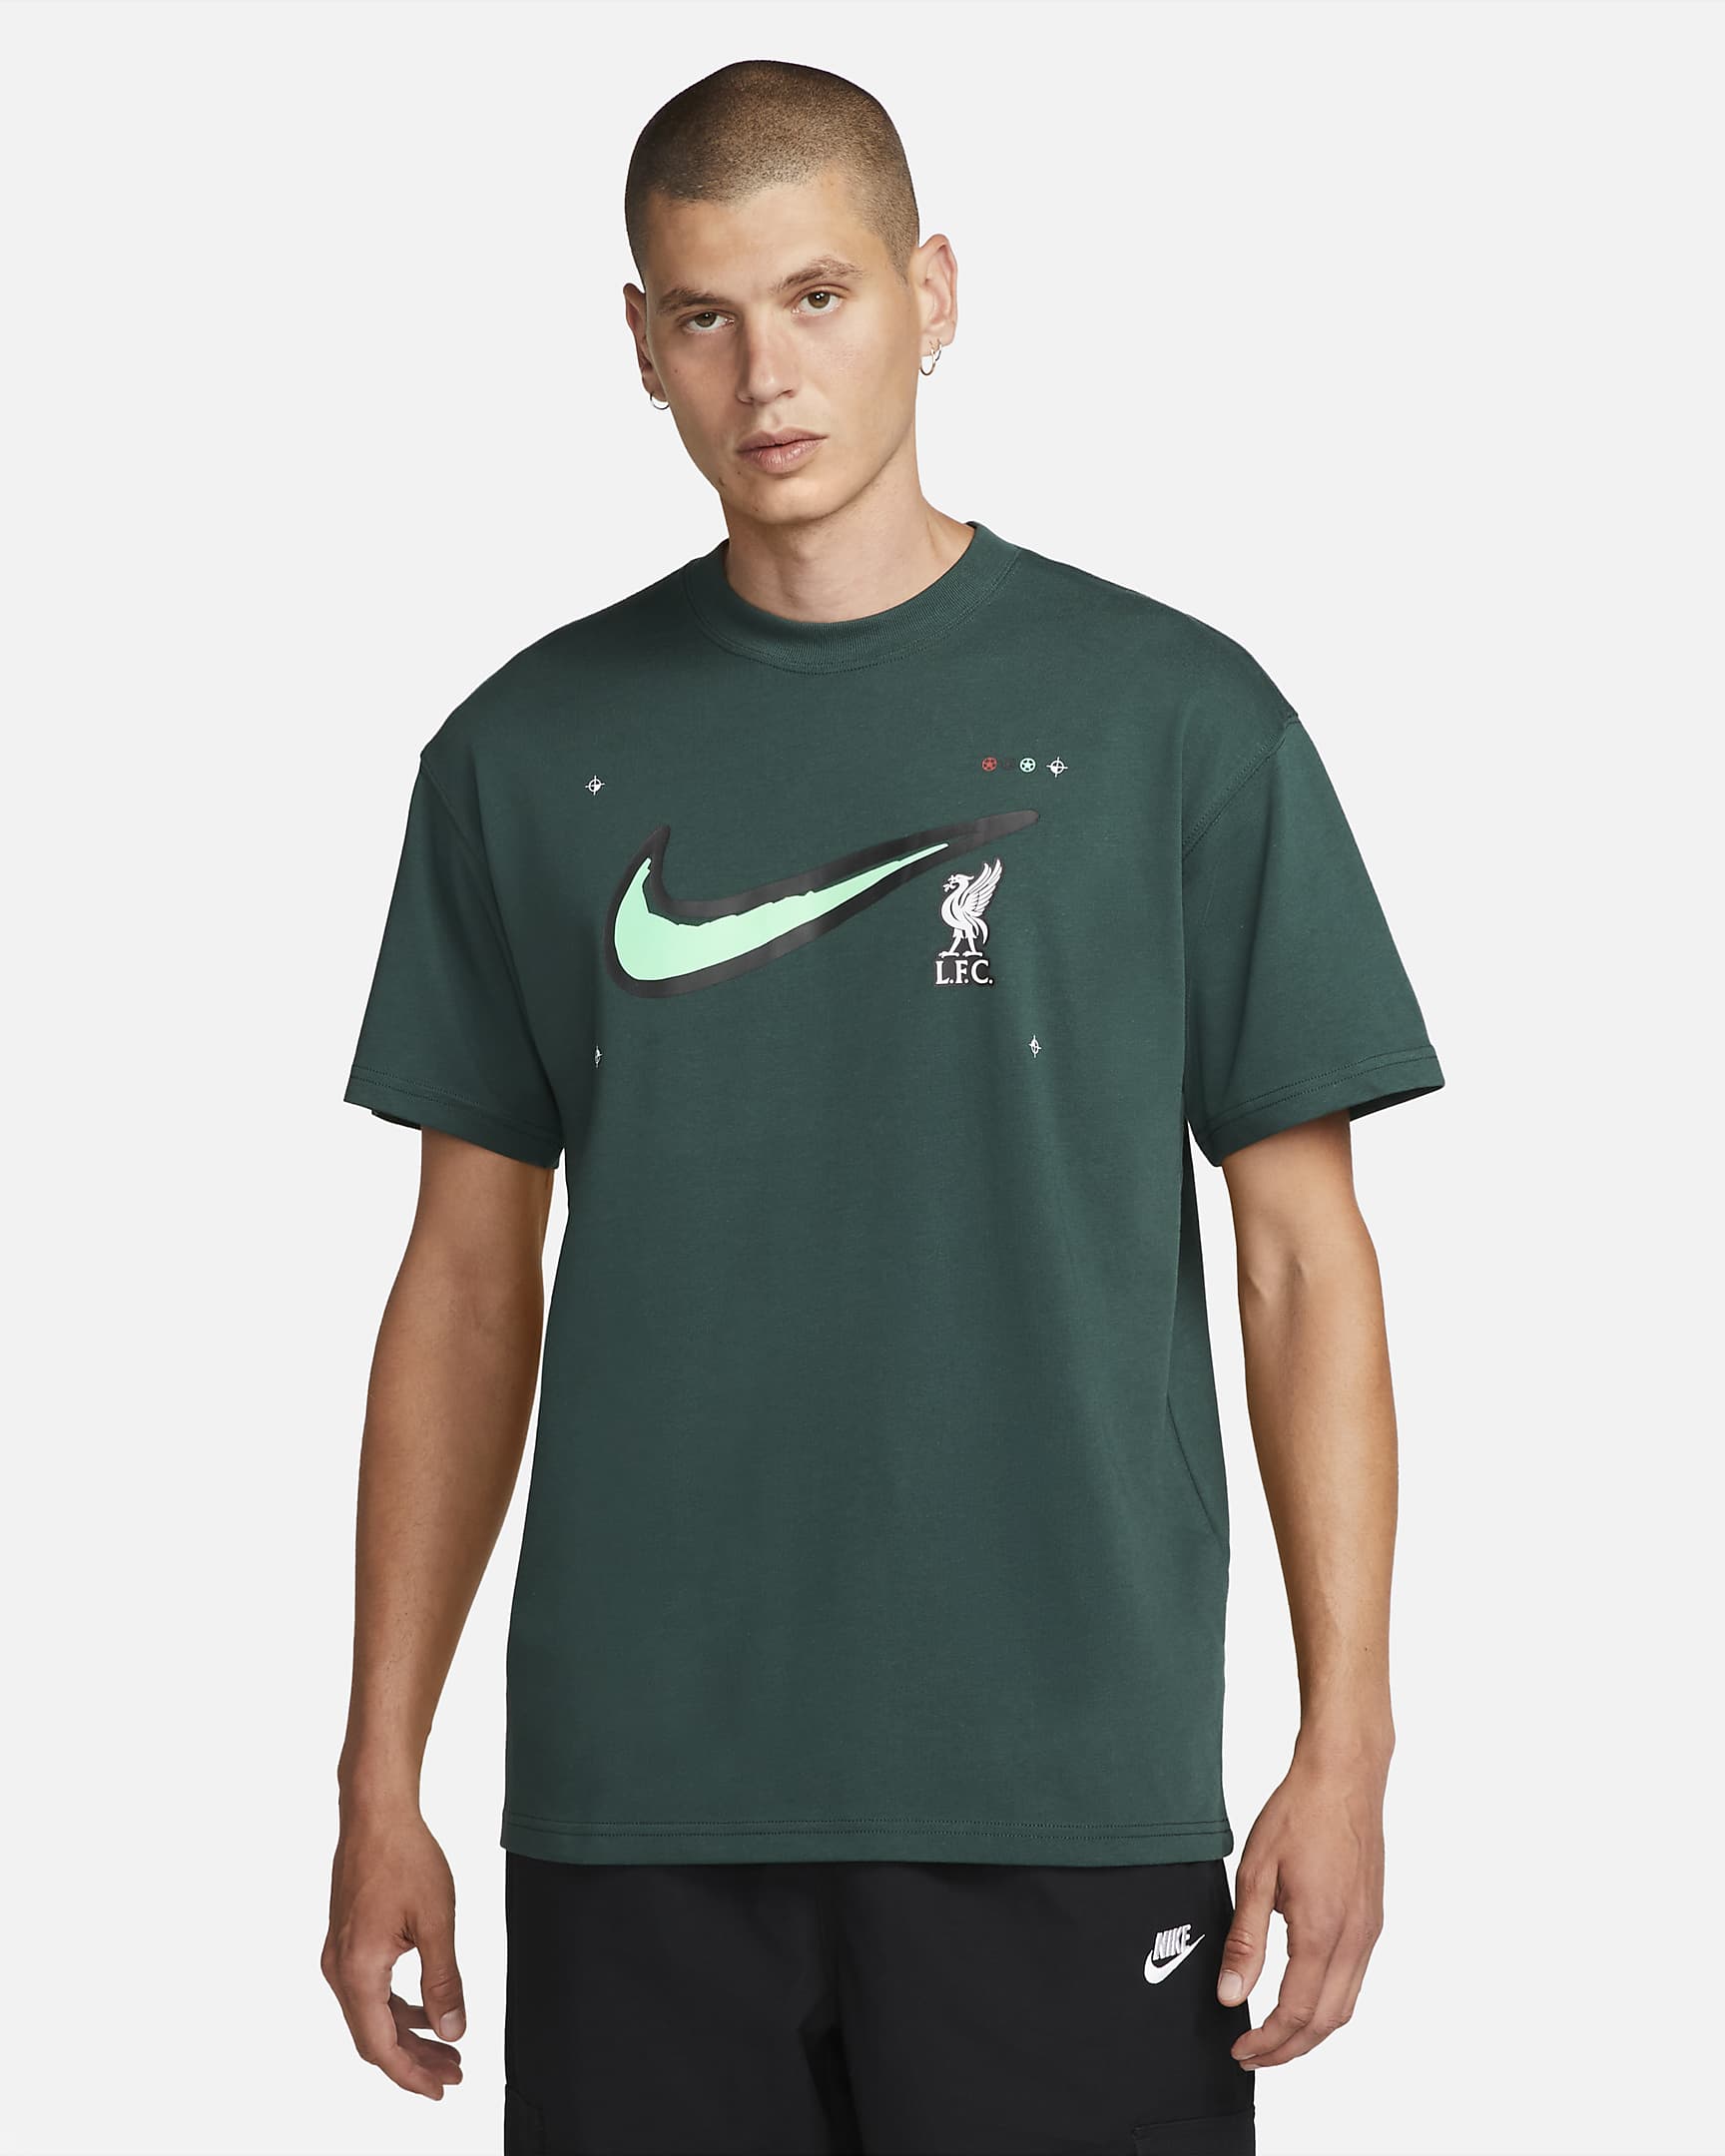 Liverpool F.C. Max90 Men's Nike Football T-Shirt. Nike AU